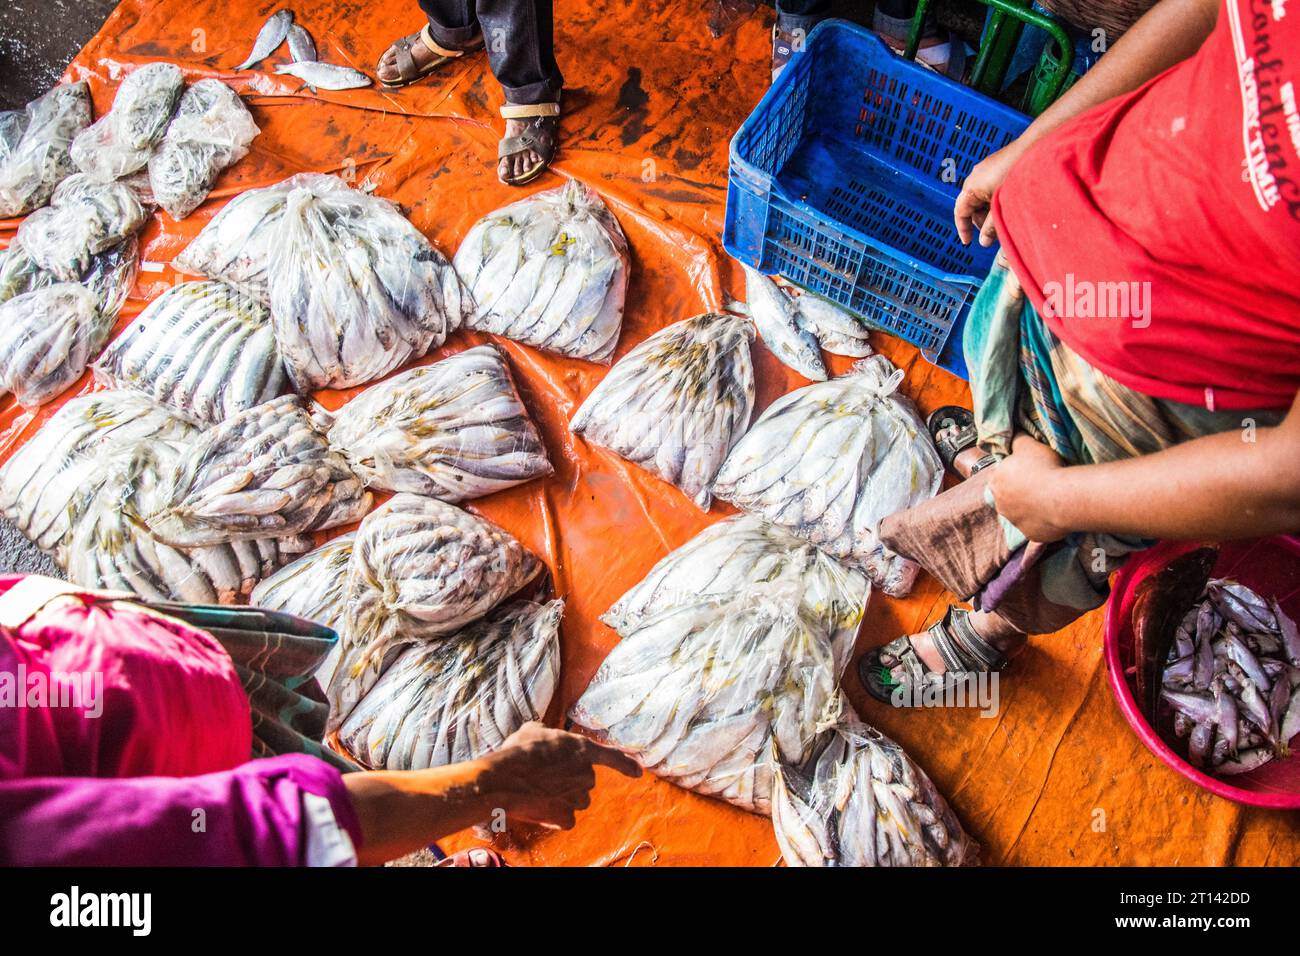 Les gens se sont rassemblés sur un marché aux poissons local pour acheter du poisson dans la ville de Barishal, au Bangladesh Banque D'Images